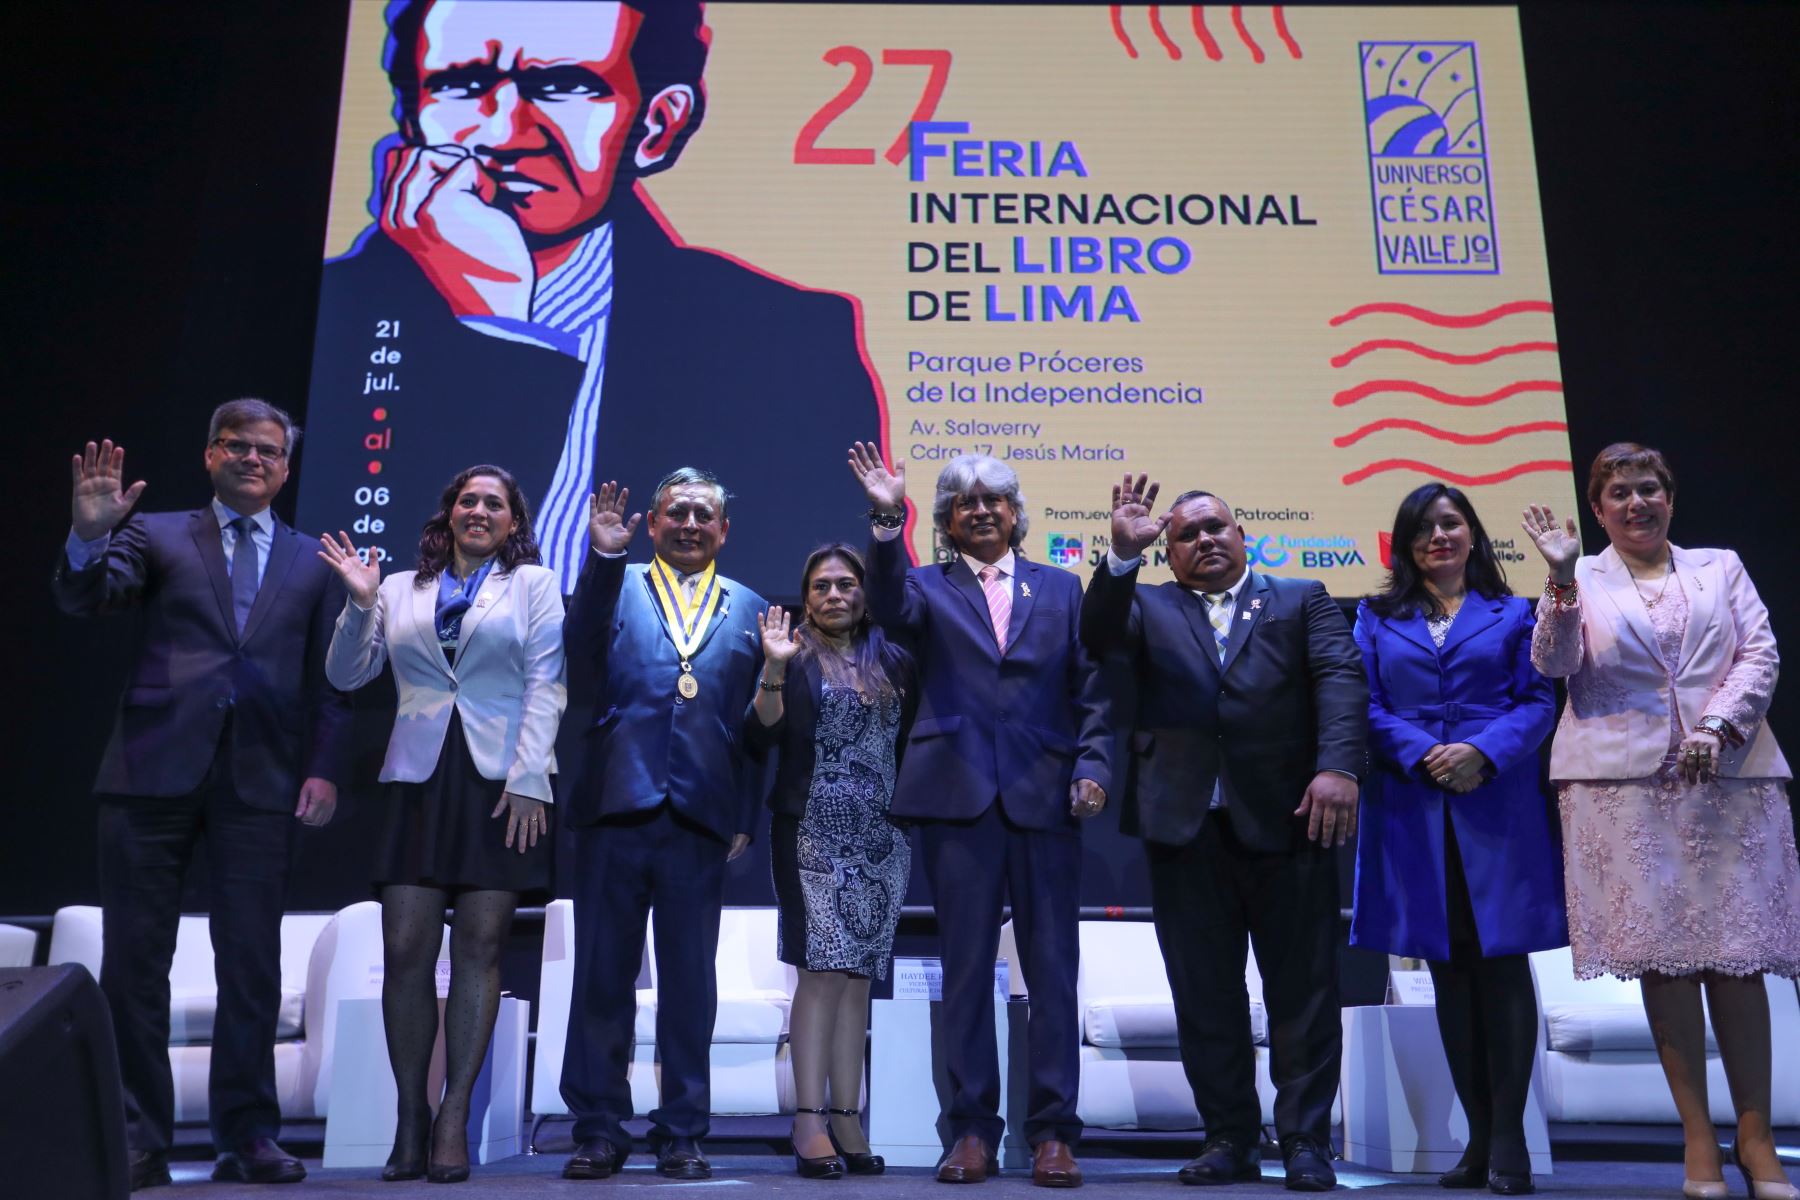 Ceremonia inaugural de la Feria Internacional del Libro de Lima en Jesús María. Foto: ANDINA/Daniel Bracamonte